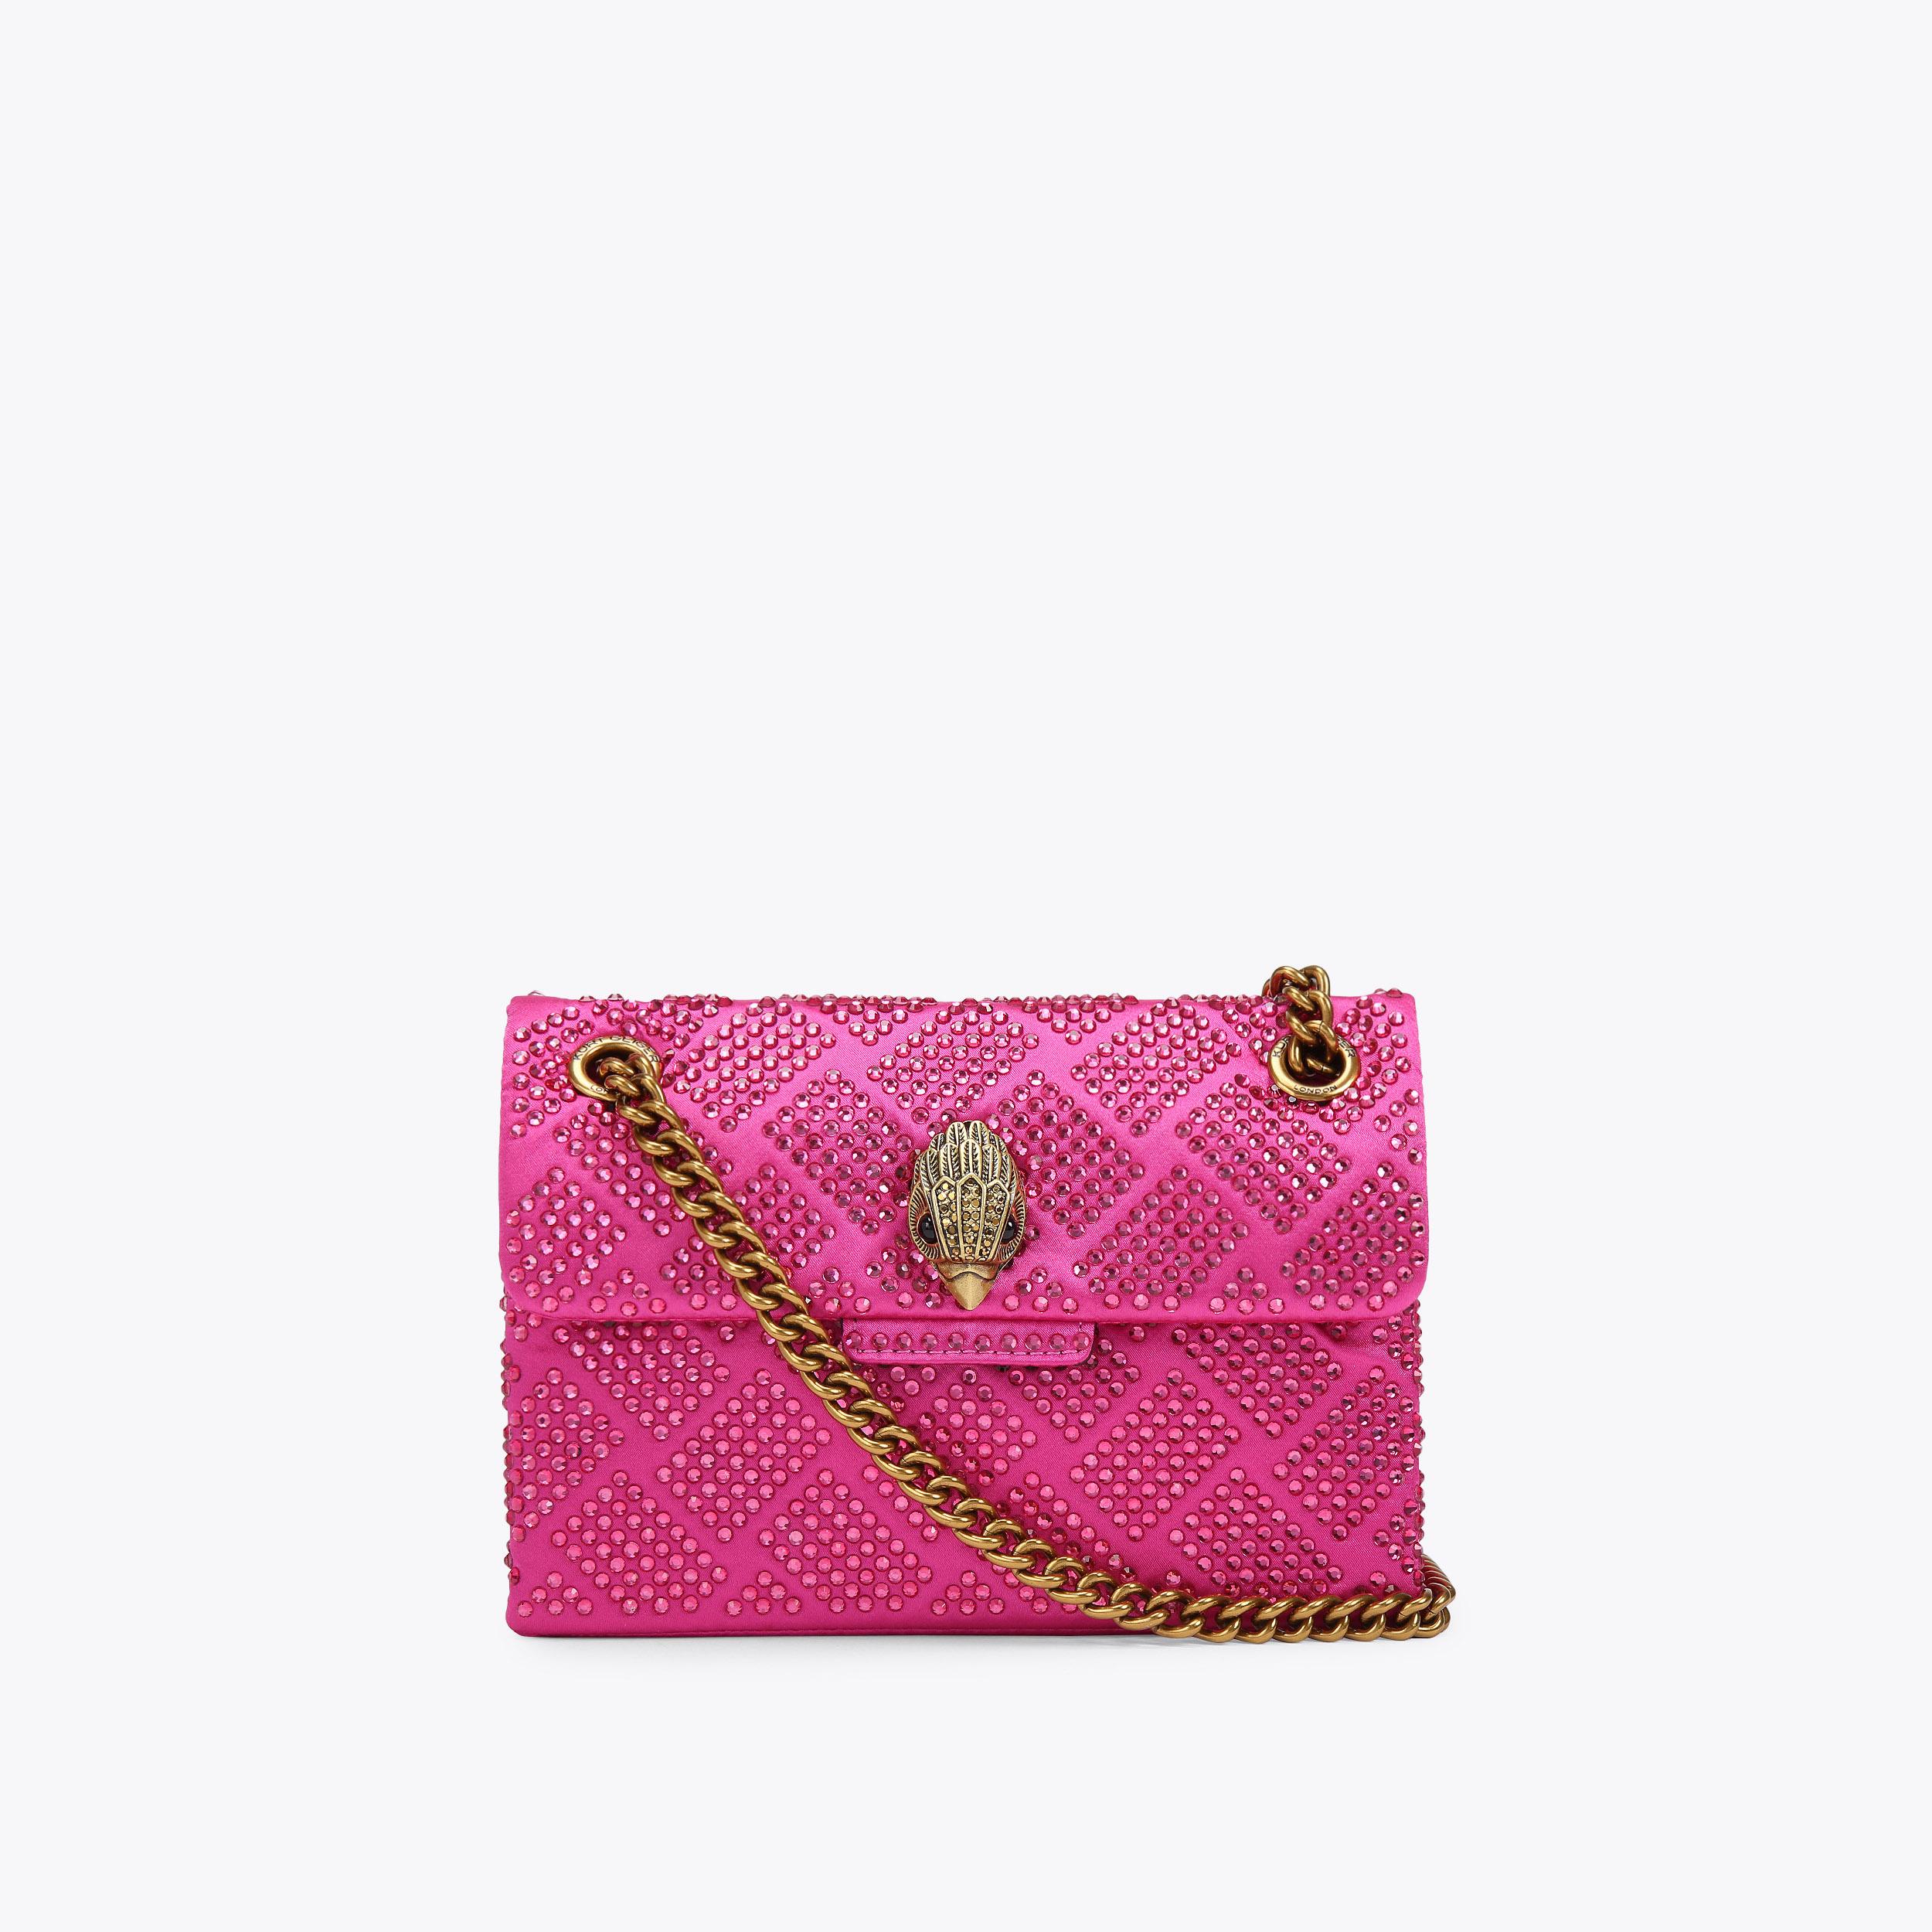 FABRIC MINI KENSINGTON Pink Fabric Crystal Cross Body Mini Bag by KURT ...